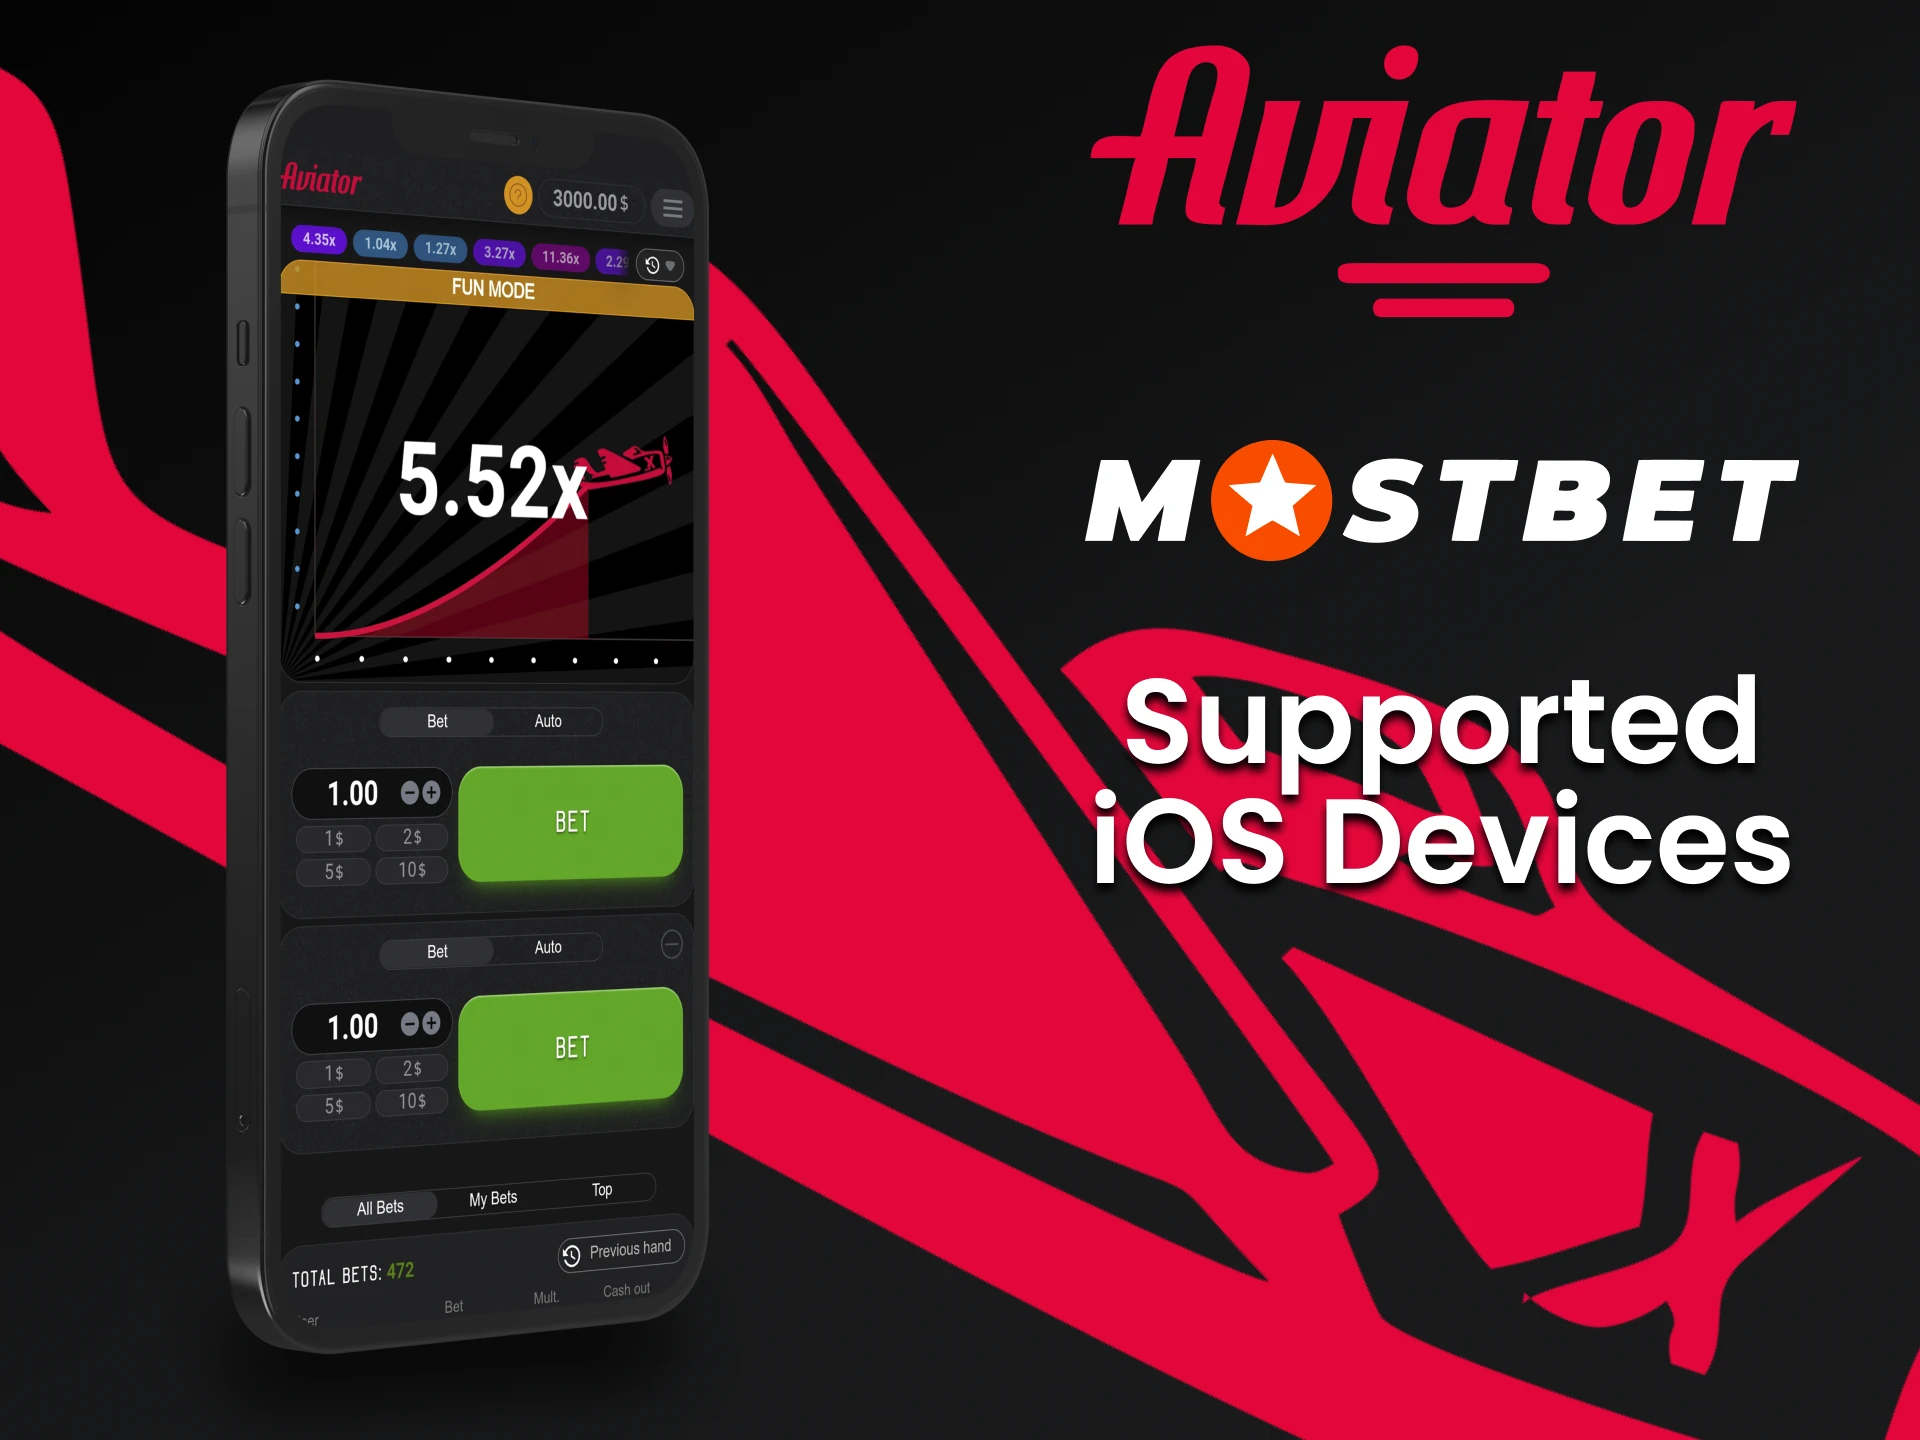 Para jogar Aviator da Mostbet, escolha seu dispositivo iOS.